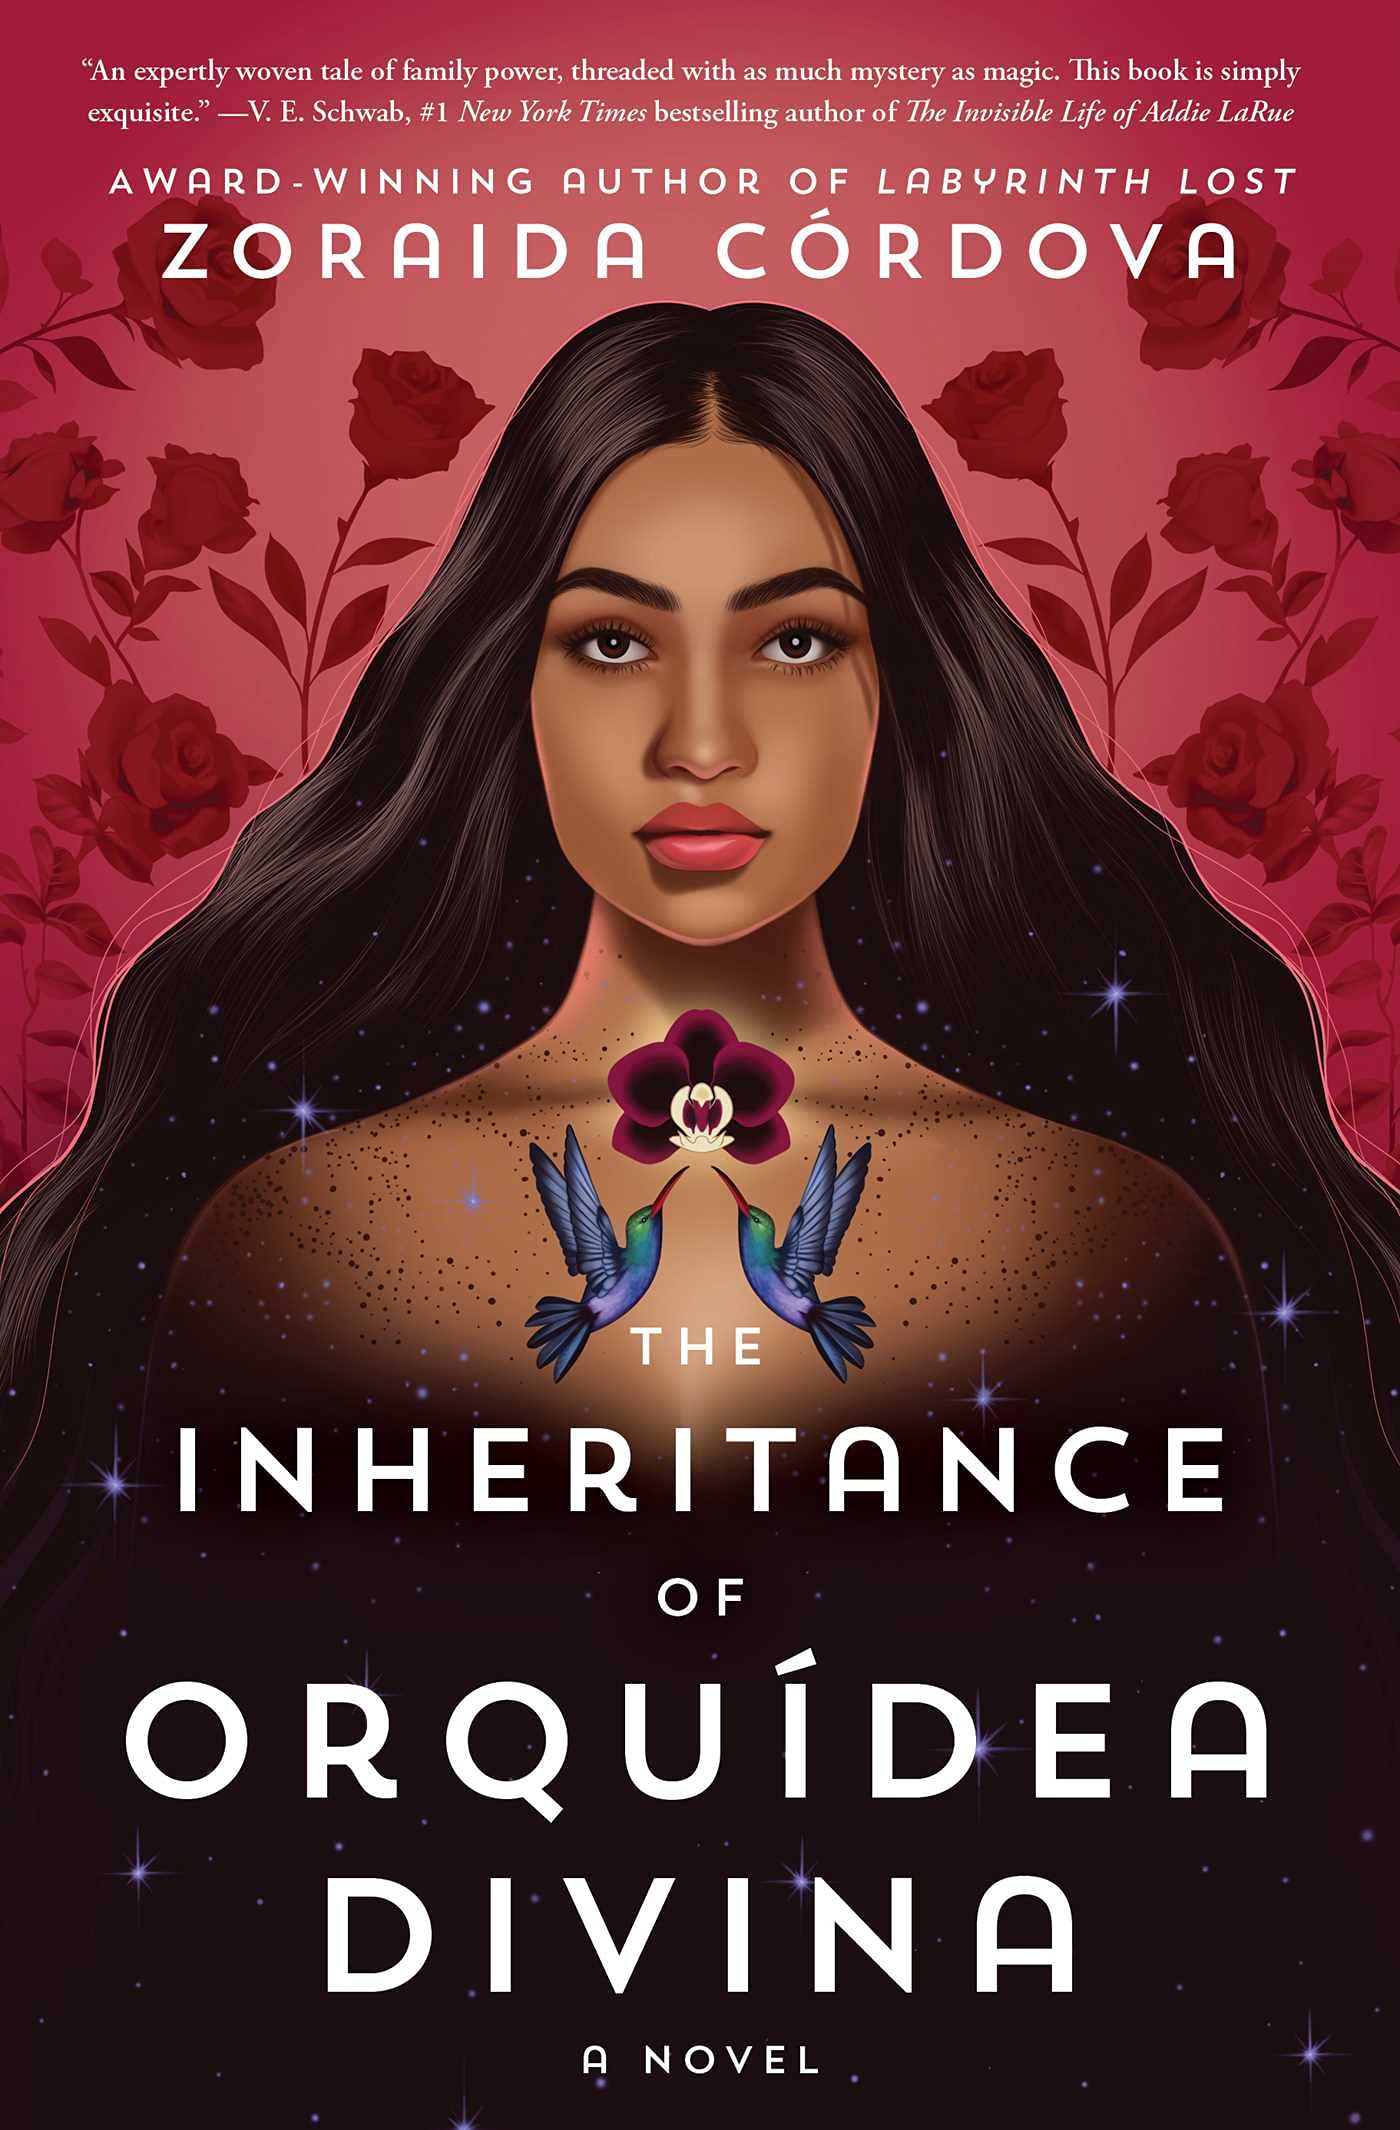 Cover of The Inheritance of Orquidea Divina by Zoraida Cordova.